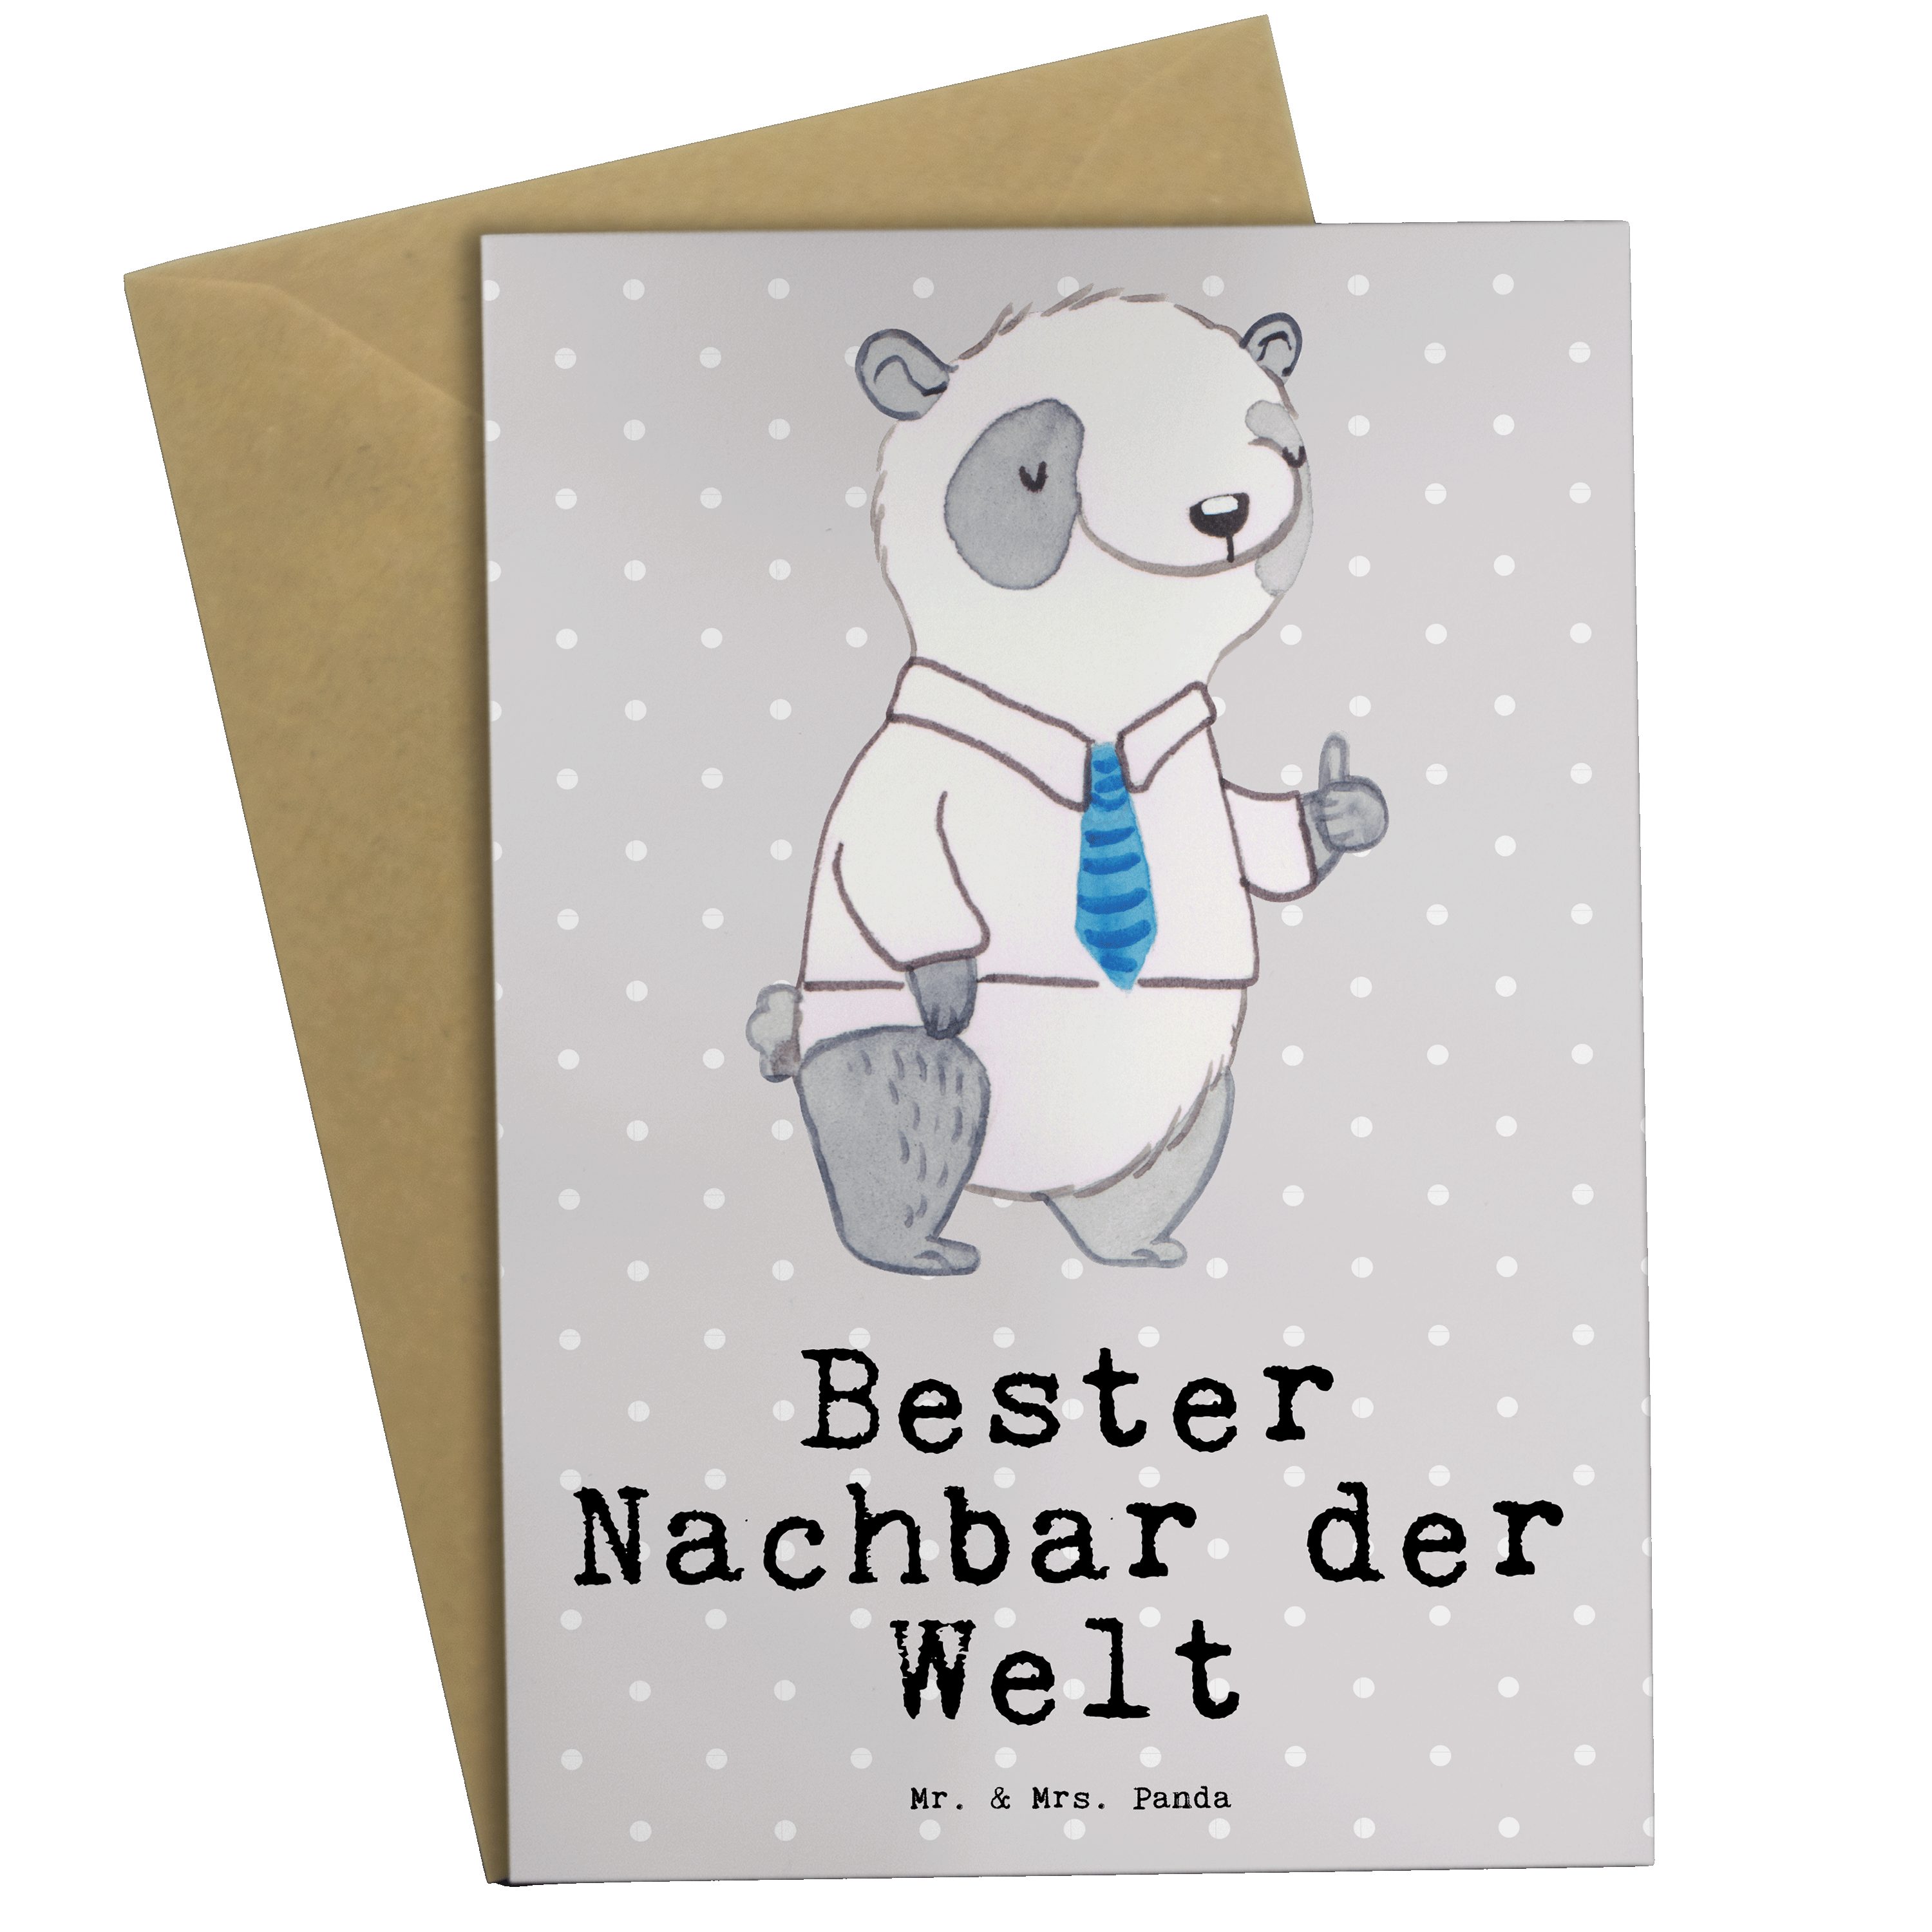 Mr. & Mrs. Panda Grußkarte Panda Bester Nachbar der Welt - Grau Pastell - Geschenk, Geburtstagsg, Einzigartige Motive